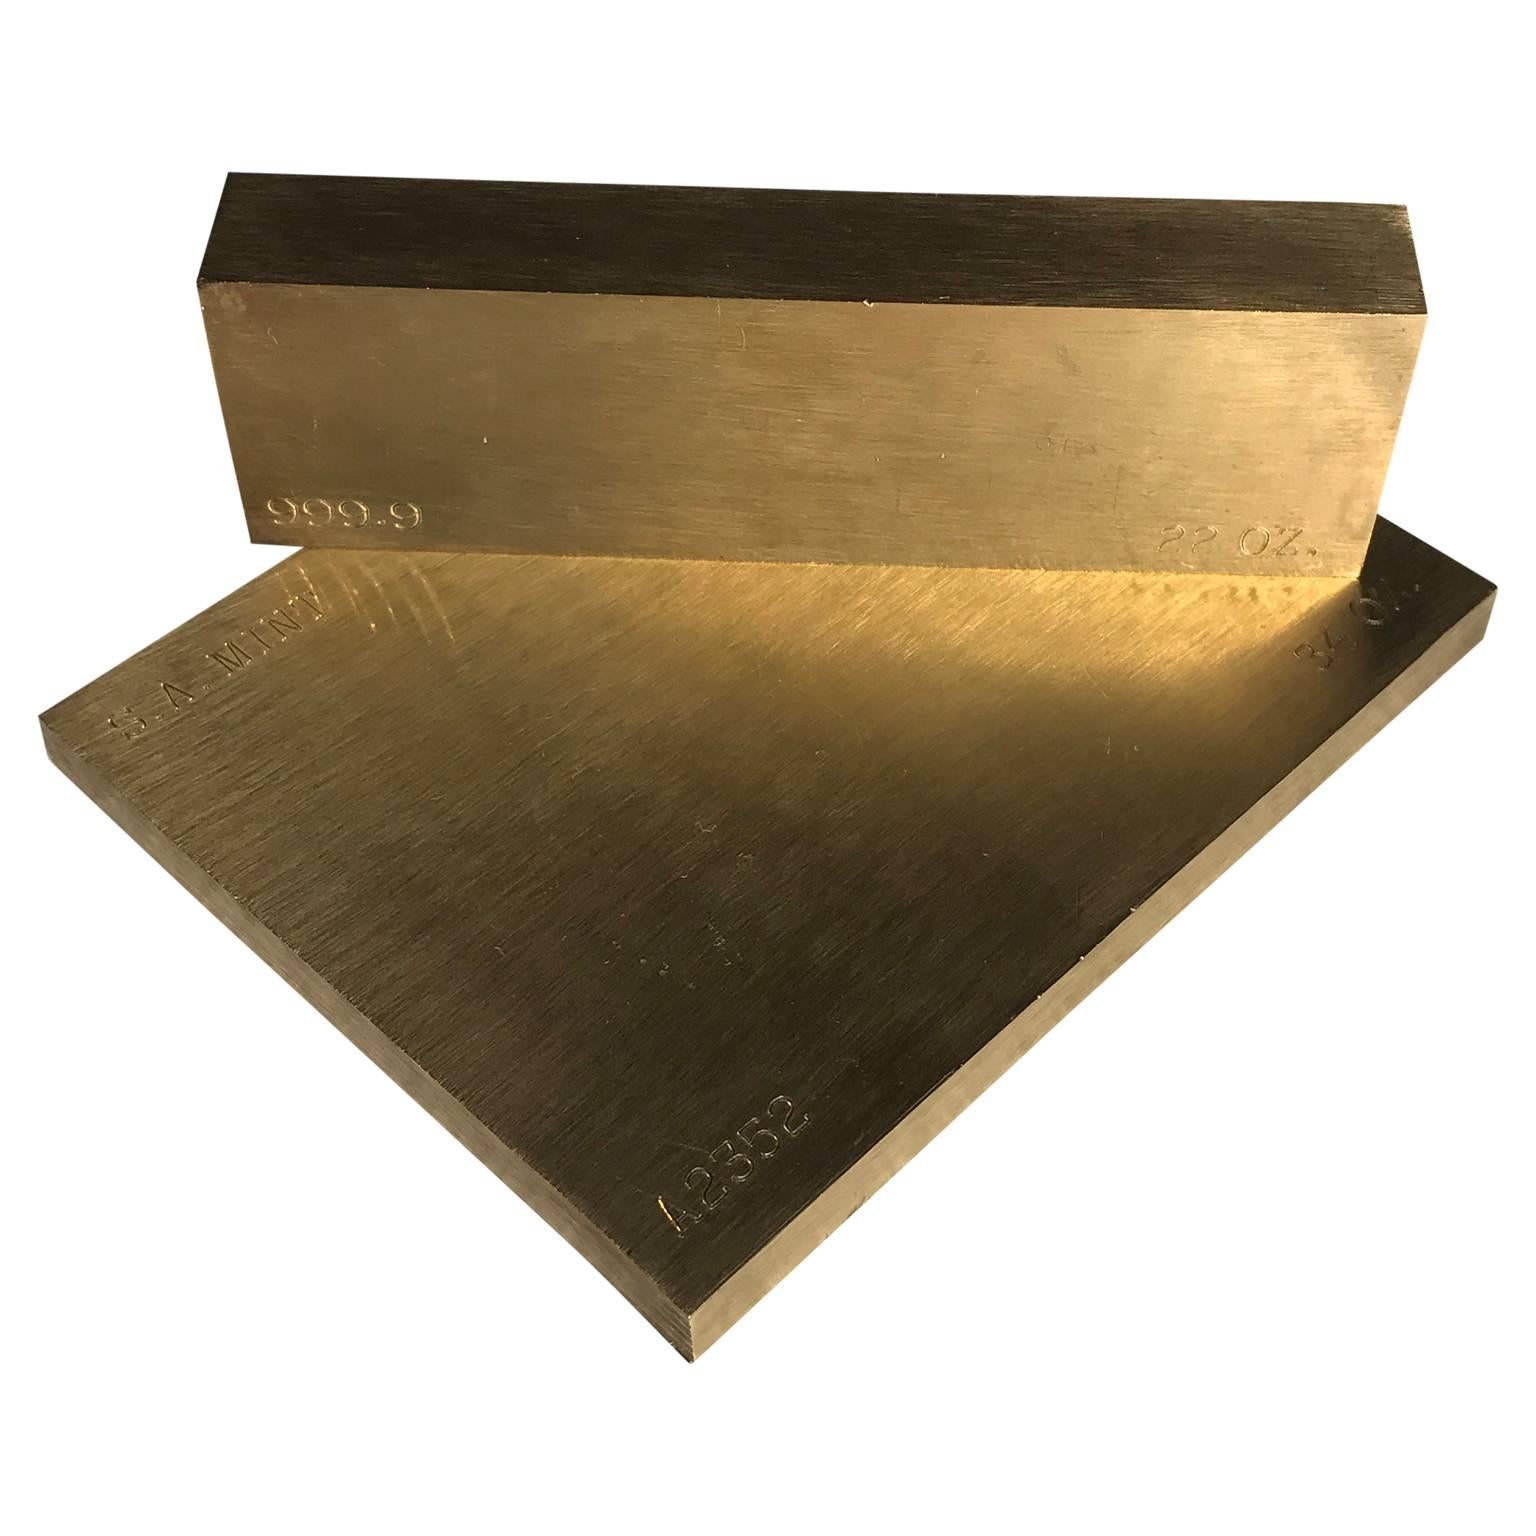 gold bar paperweight